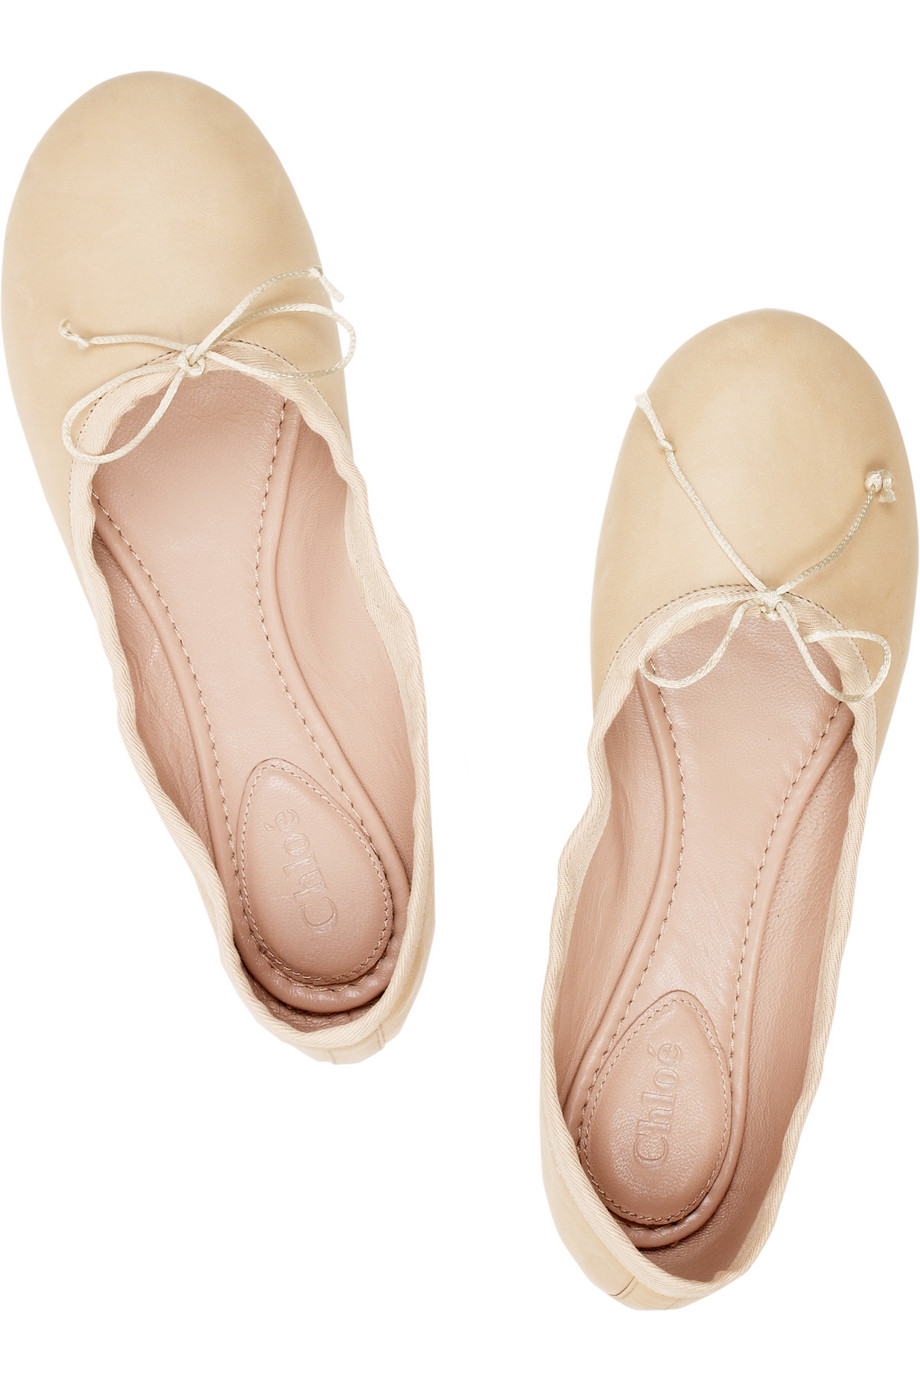 Chloe Ballet Flat Hotsell, 58% OFF | www.dalmar.it